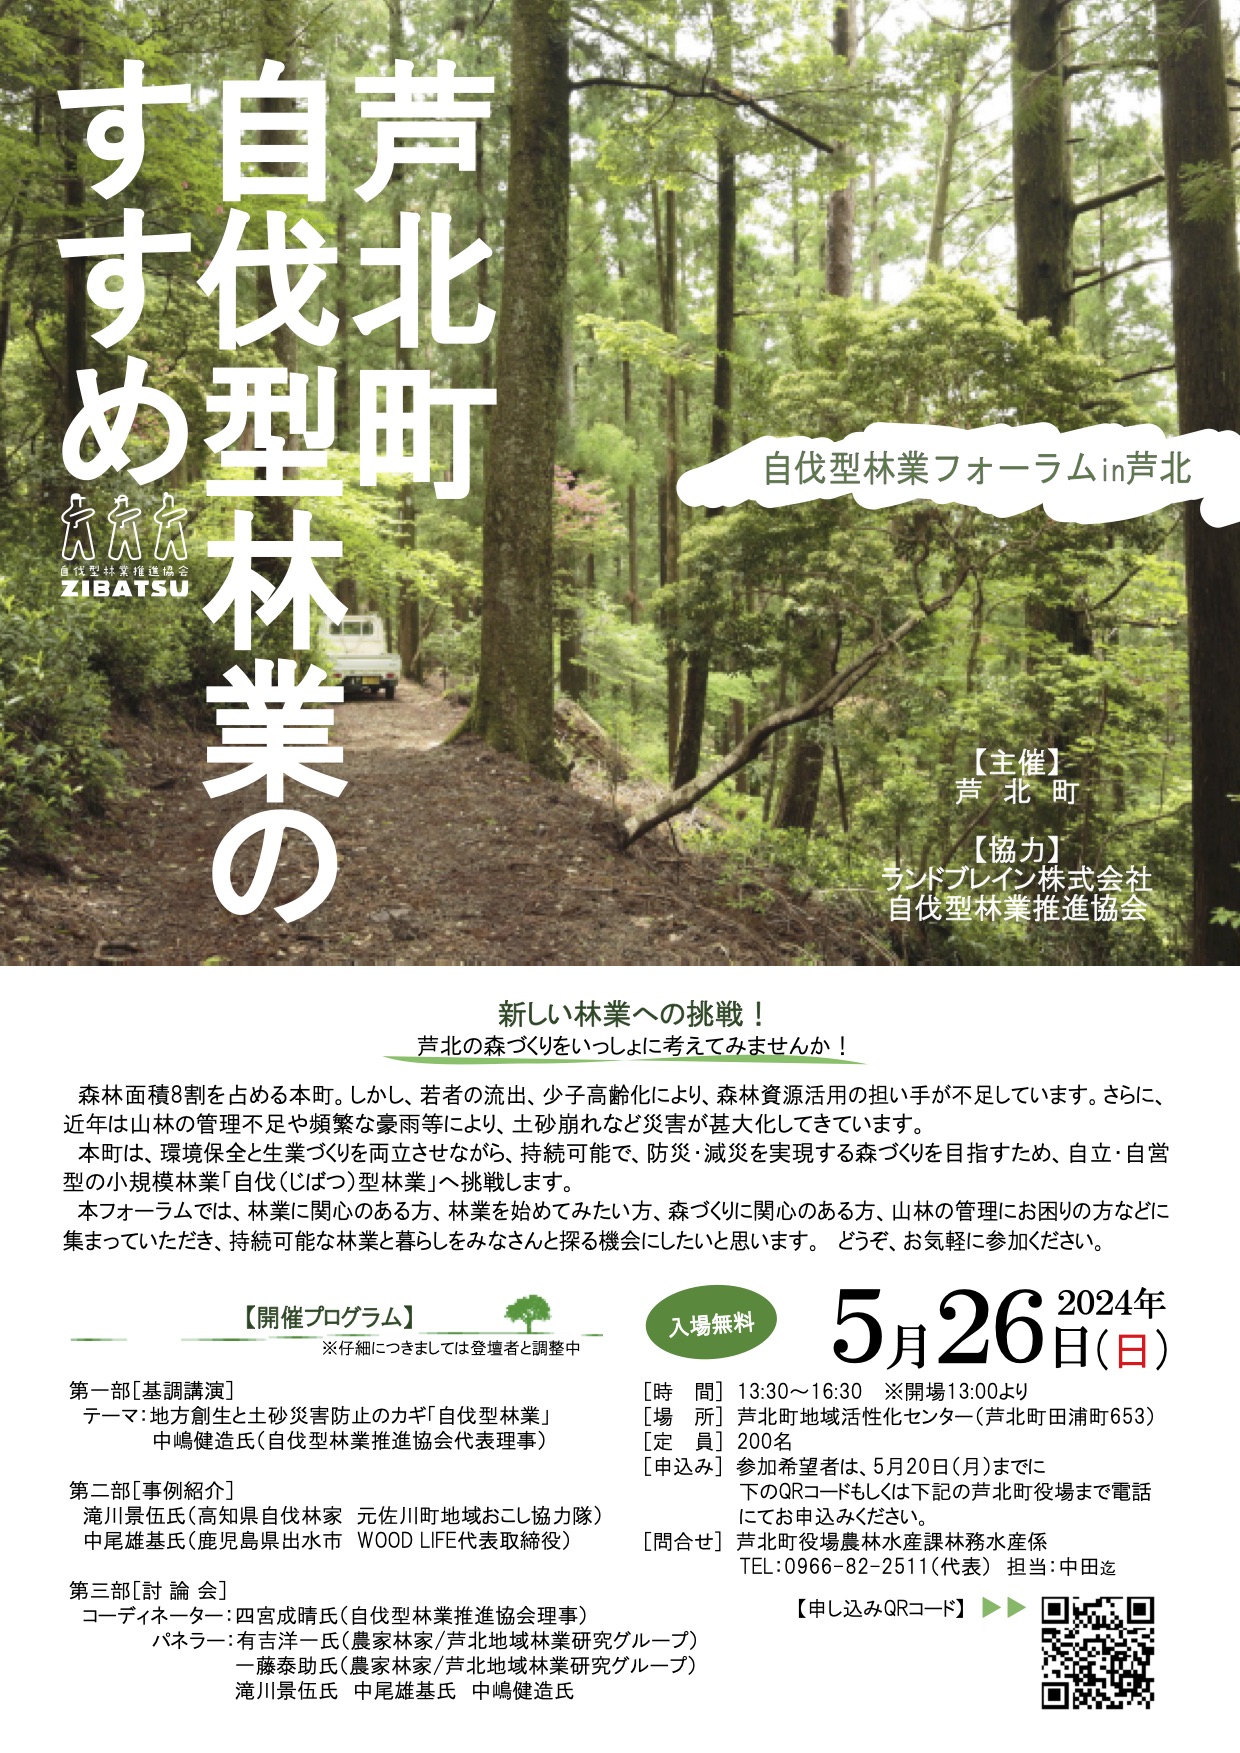 【5/26開催】熊本県芦北町自伐型林業のすすめ〜自伐型林業フォーラムin芦北